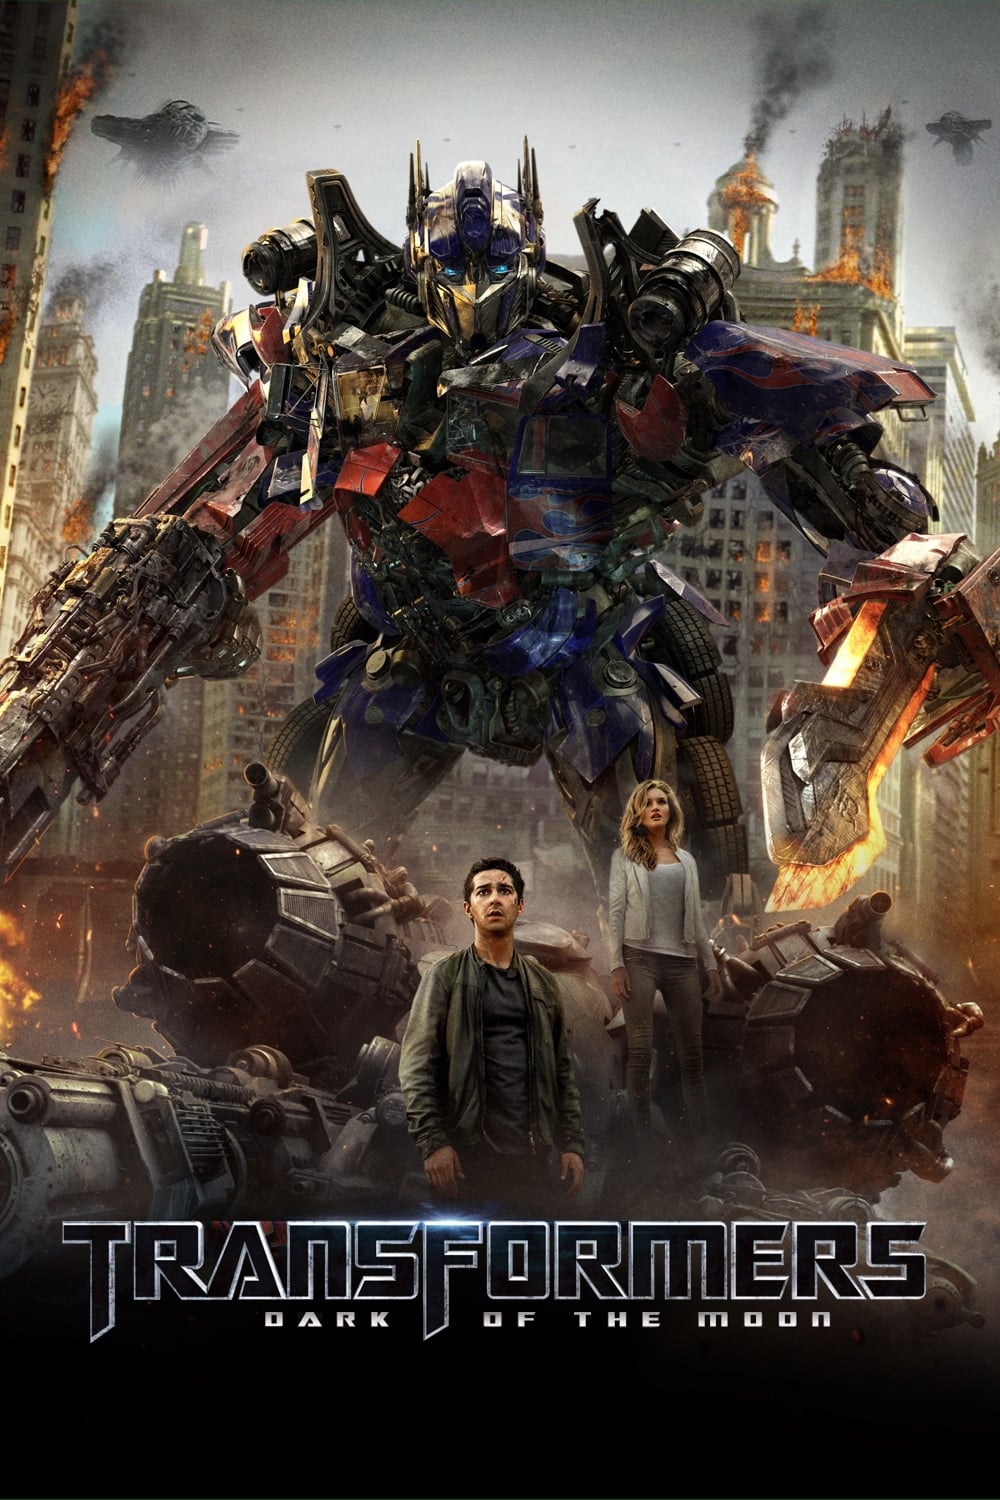 Transformers 3 : La Face cachée de la Lune (2011)